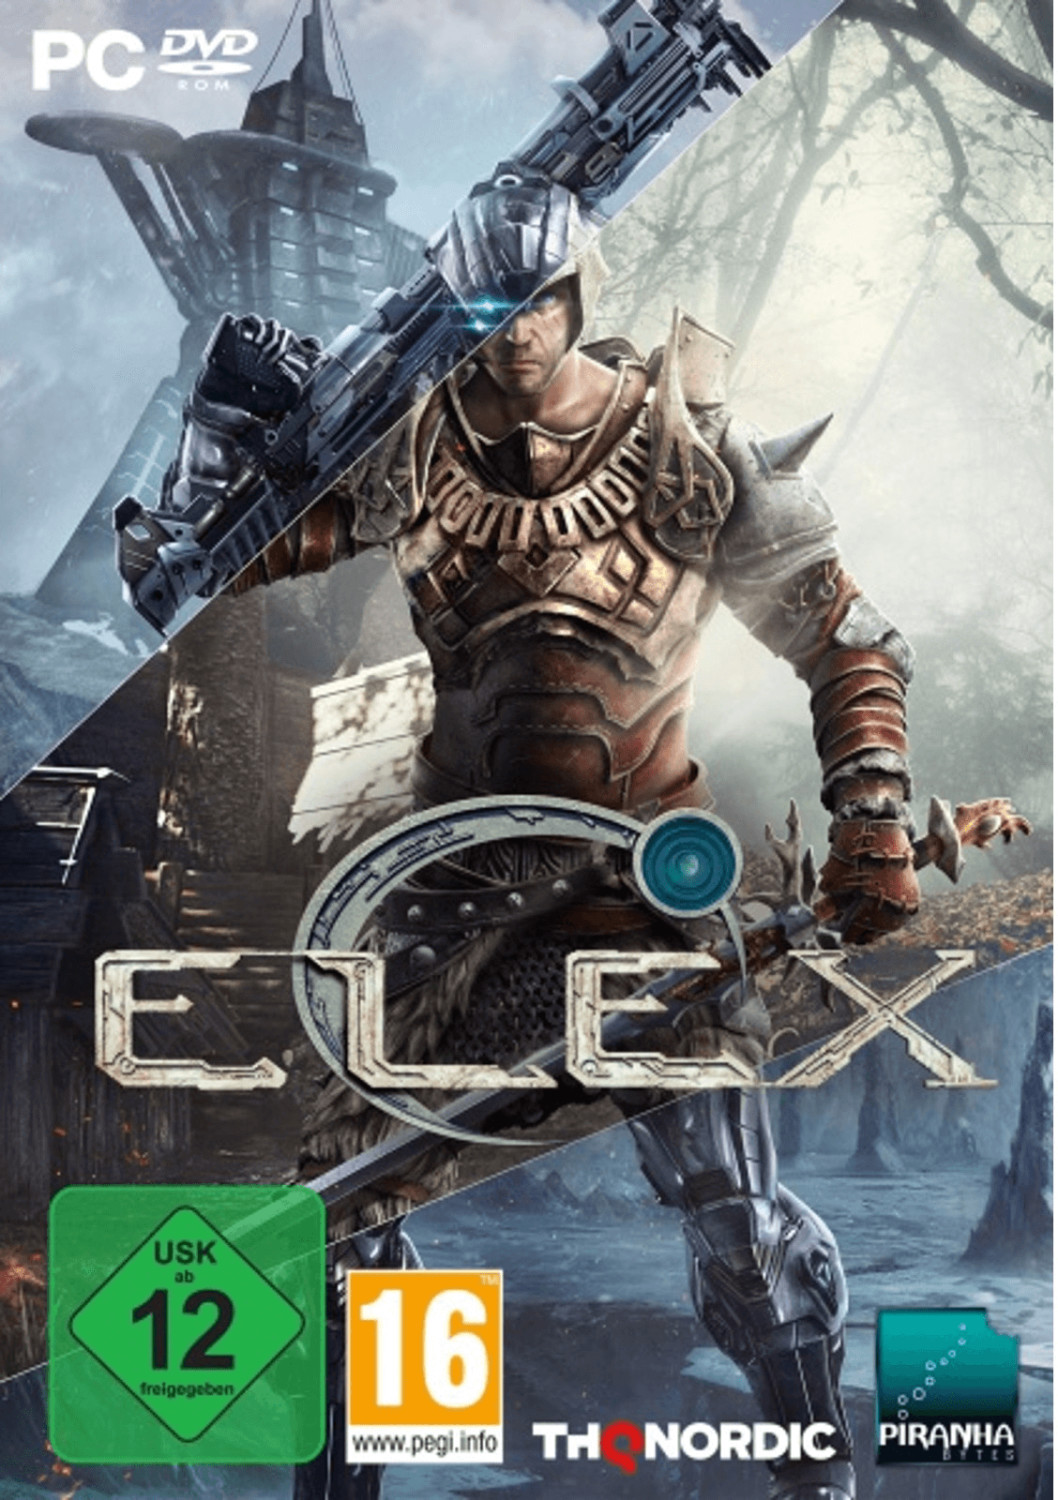 Elex (PC)